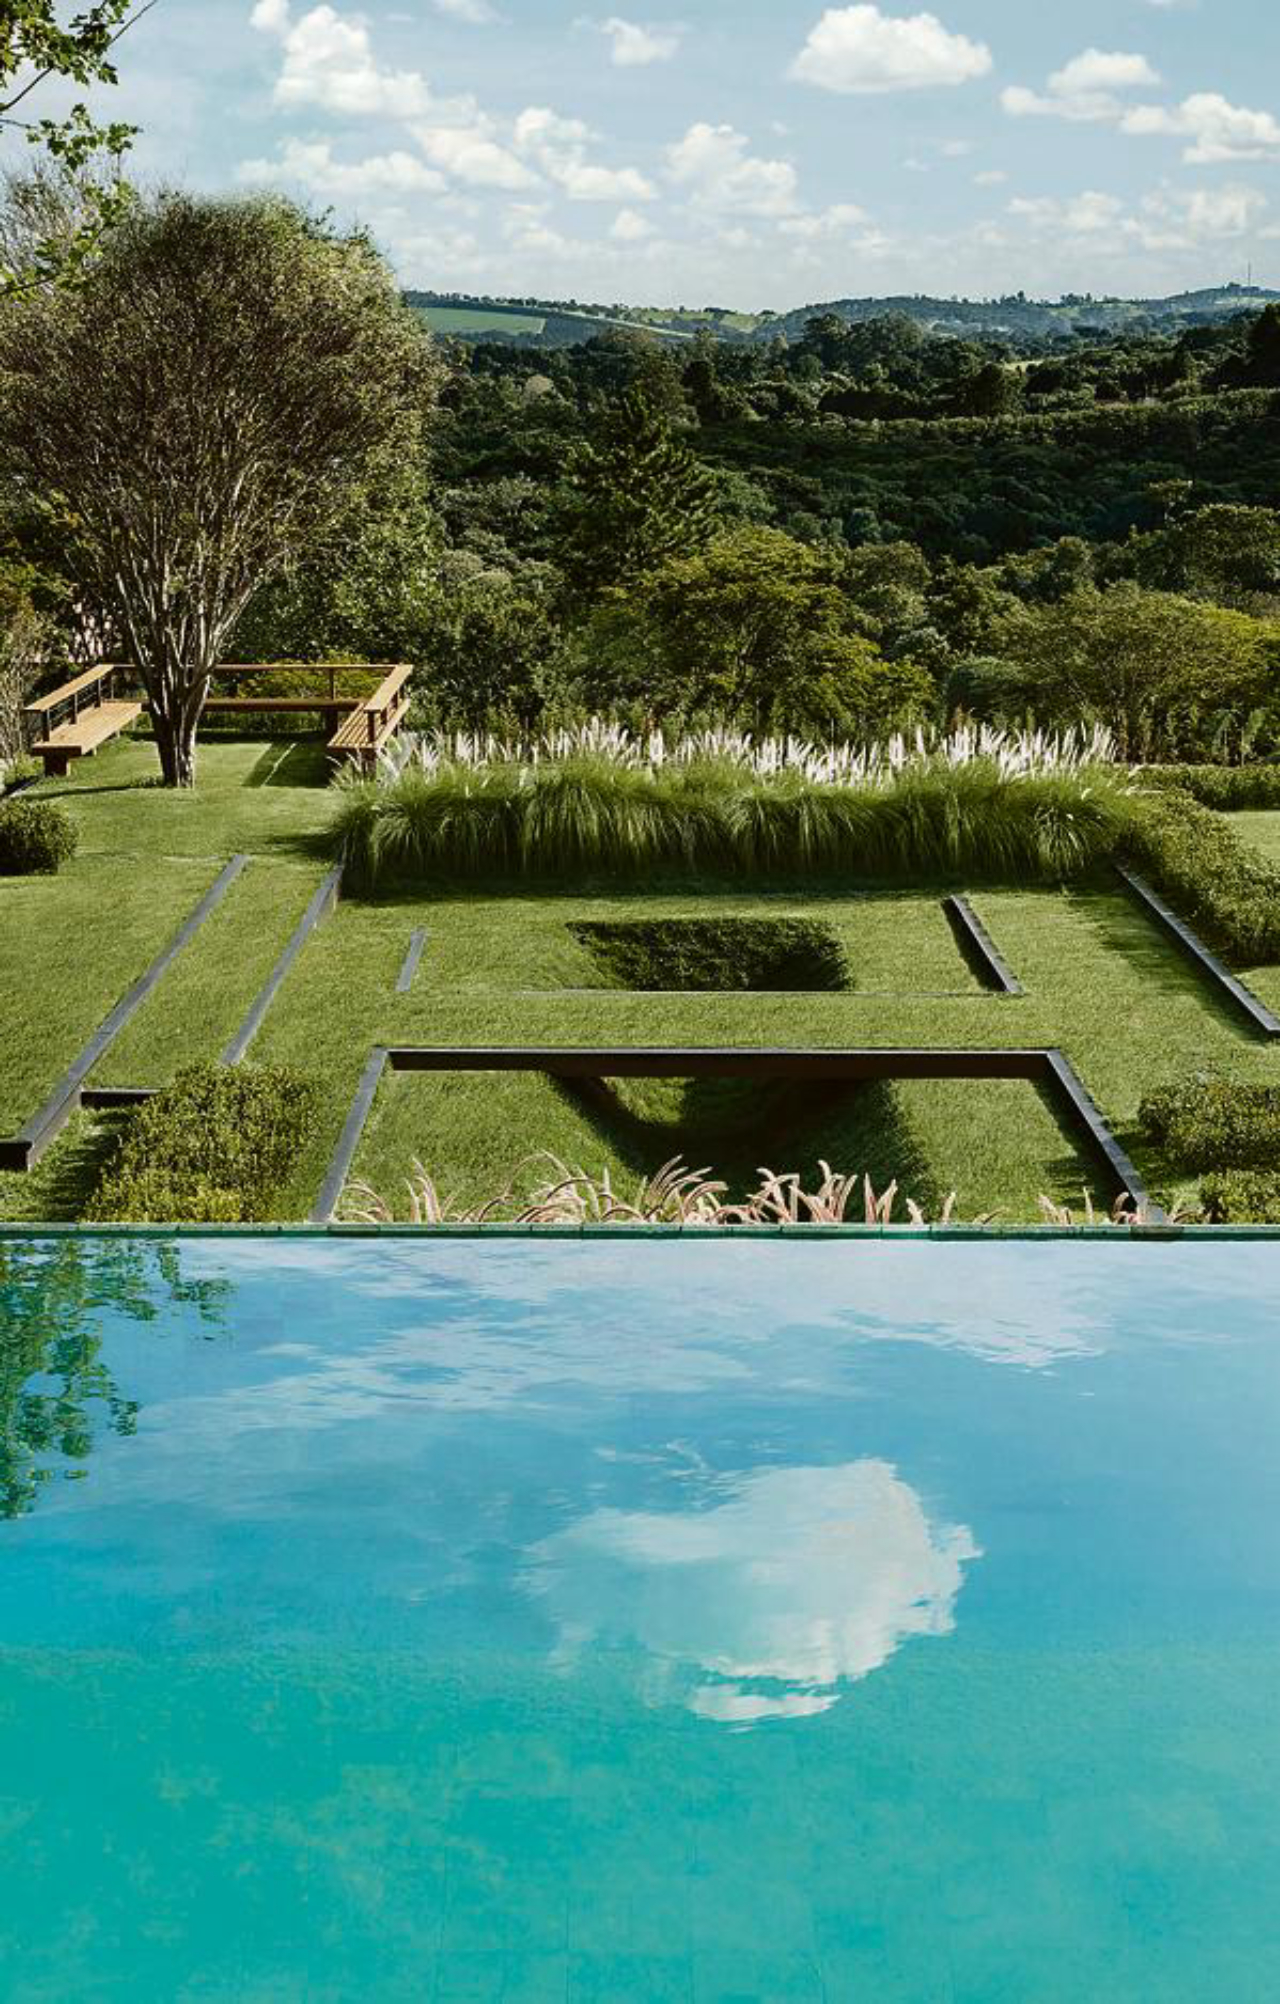 Jardim premiado em 2014 pela Asla como o mais bonito do mundo. Foto: Beto Riginik /Divulgação